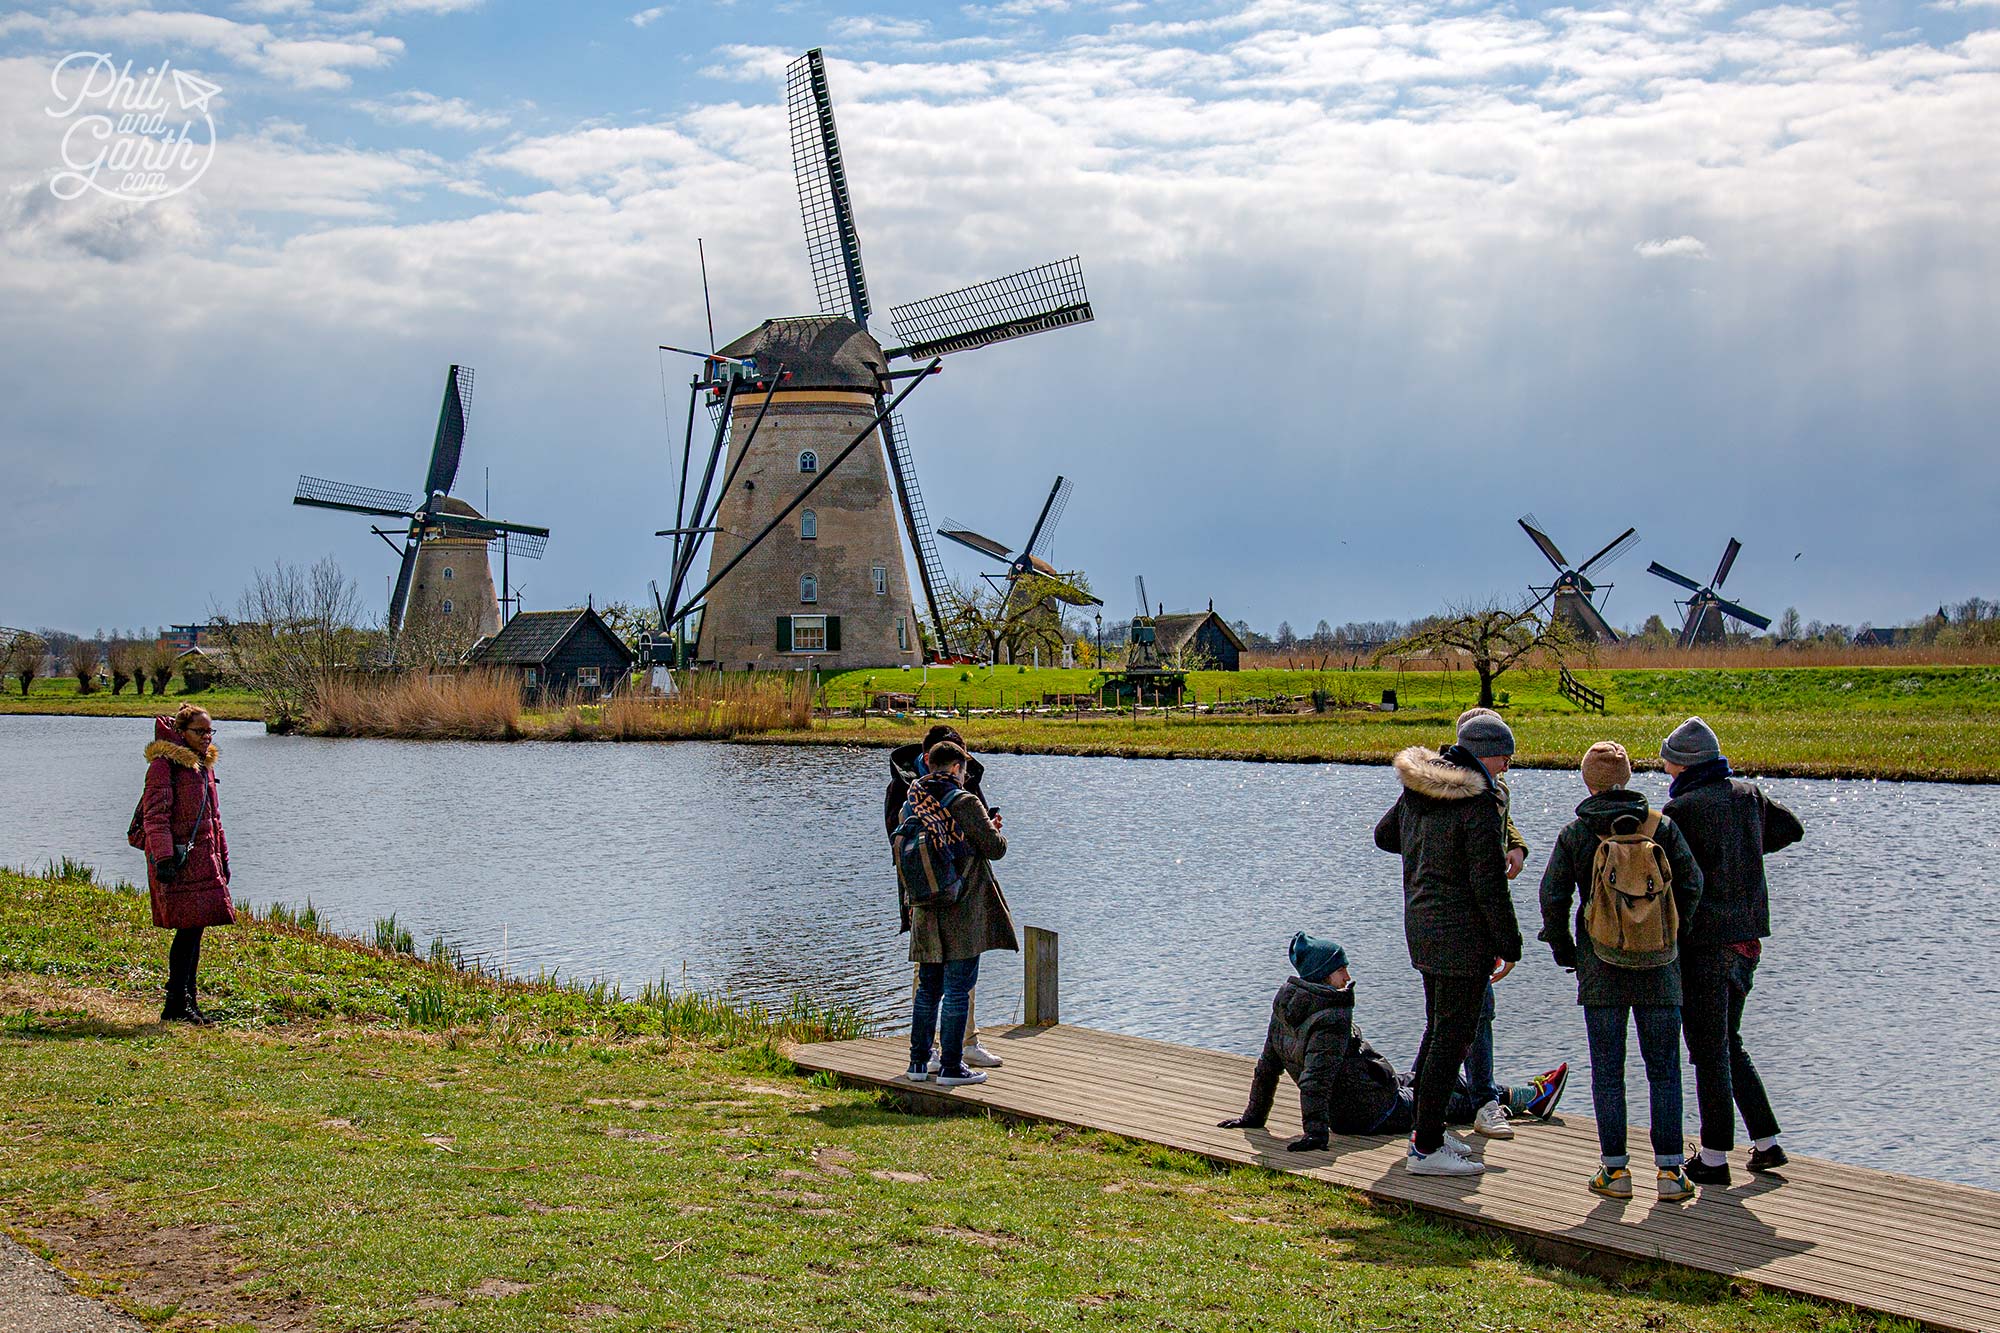 Kinderdijk is a UNESCO World Heritage Site